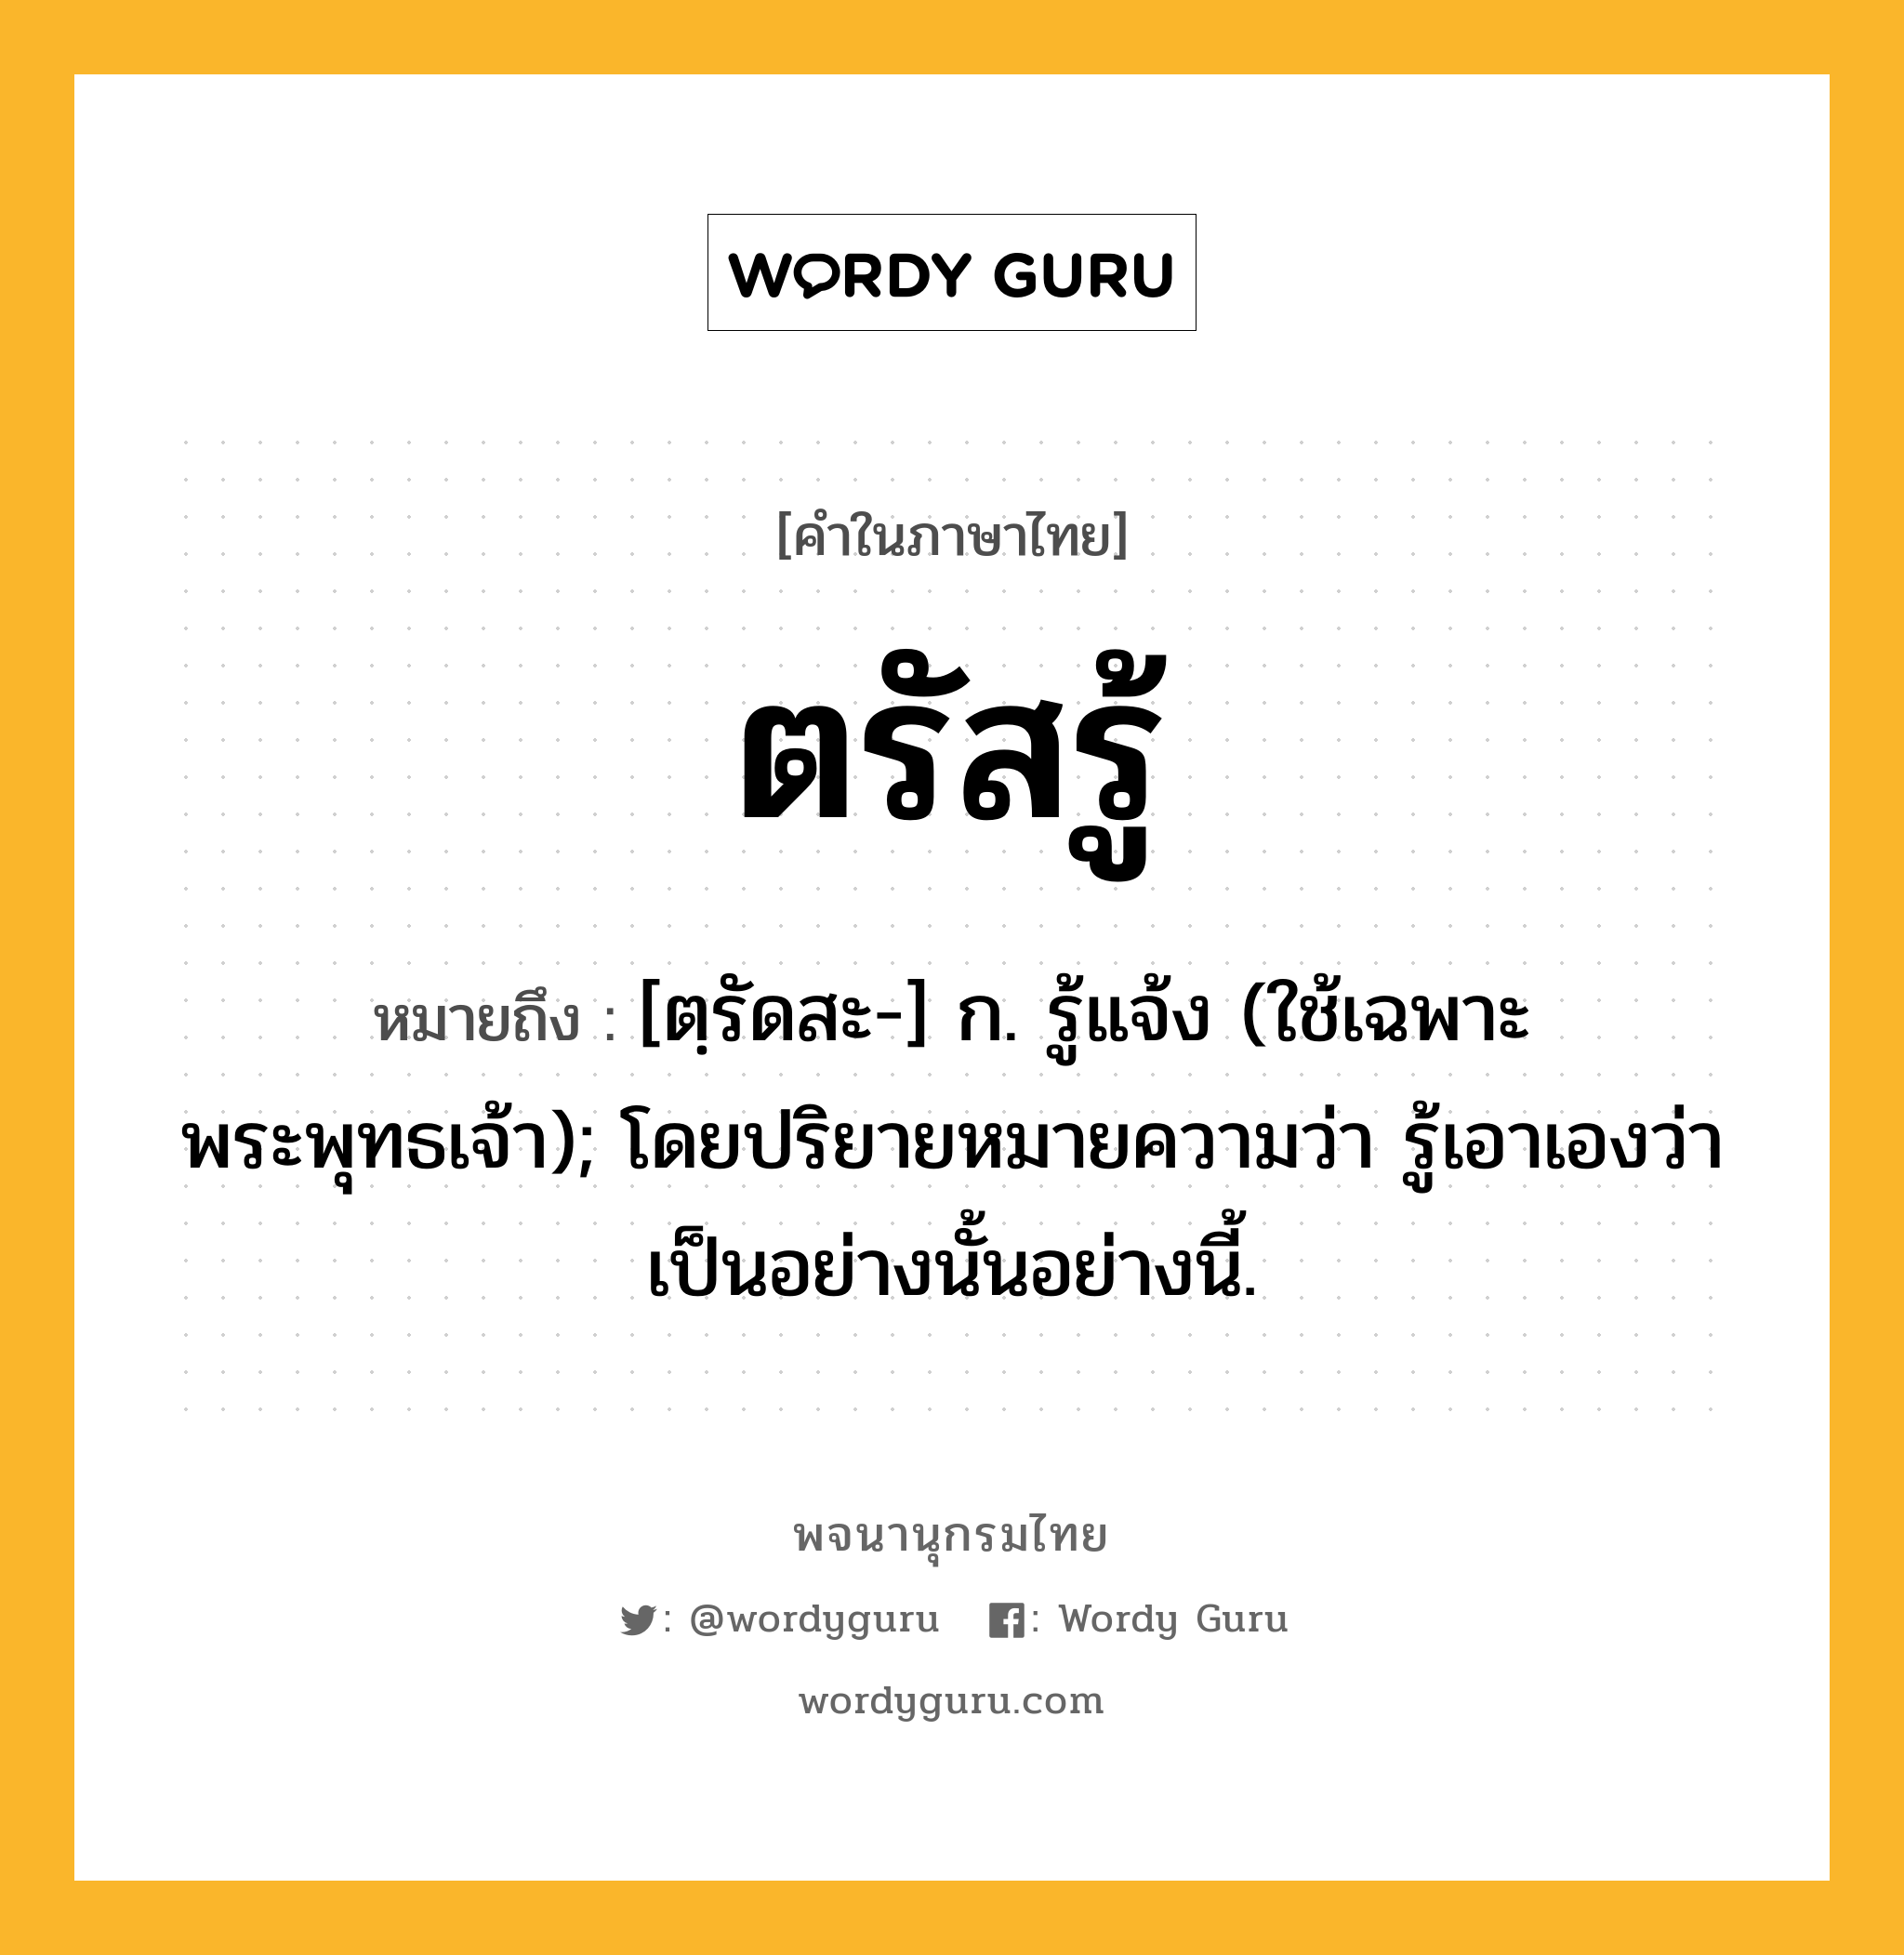 ตรัสรู้ หมายถึงอะไร?, คำในภาษาไทย ตรัสรู้ หมายถึง [ตฺรัดสะ-] ก. รู้แจ้ง (ใช้เฉพาะพระพุทธเจ้า); โดยปริยายหมายความว่า รู้เอาเองว่าเป็นอย่างนั้นอย่างนี้.